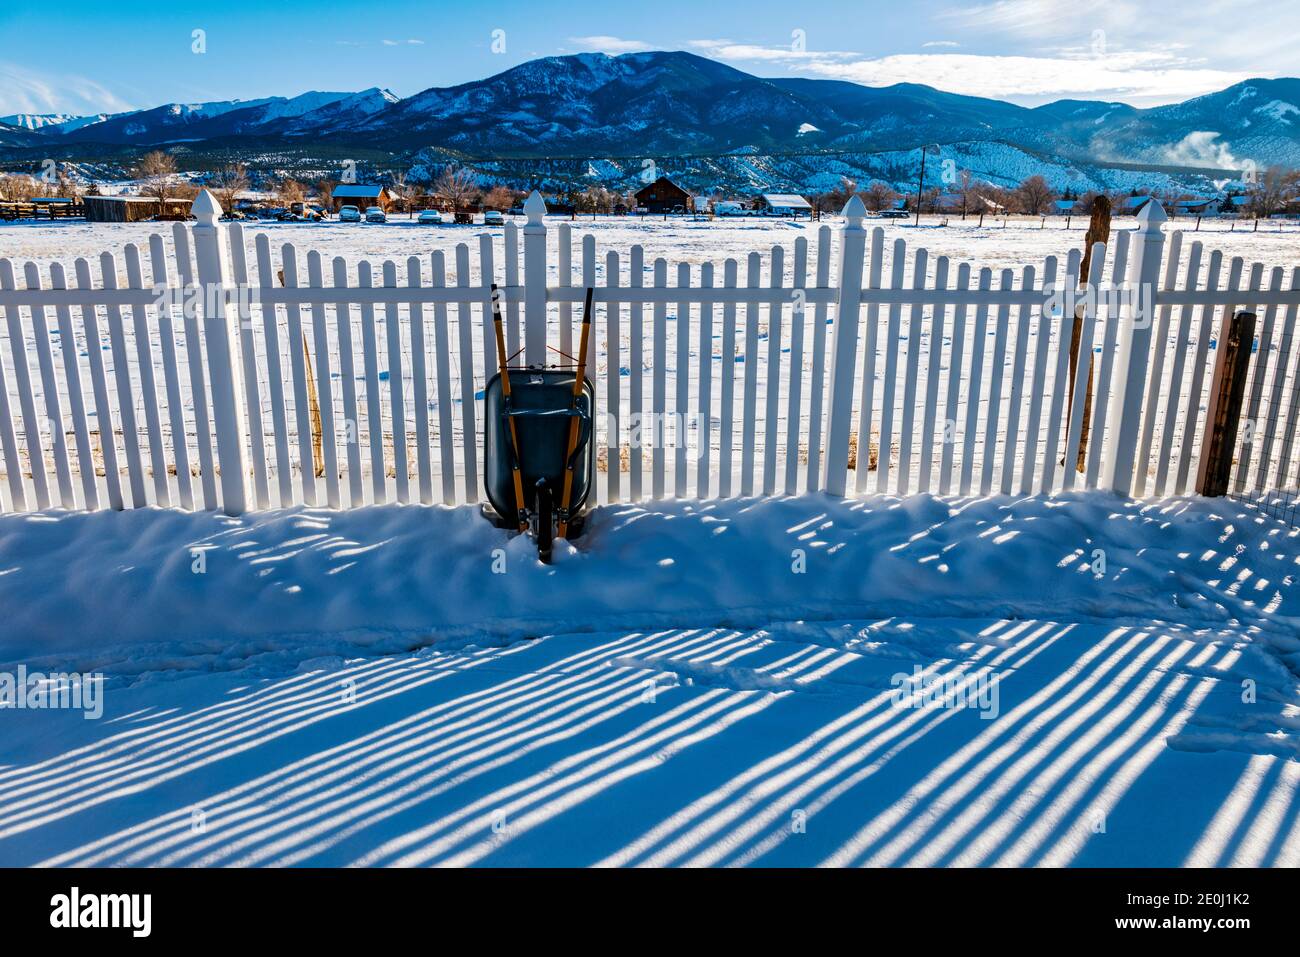 La clôture en vinyle blanc projette de longues ombres hivernales sur la neige fraîche; la montagne méthodiste au-delà; Salida; Colorado; États-Unis Banque D'Images